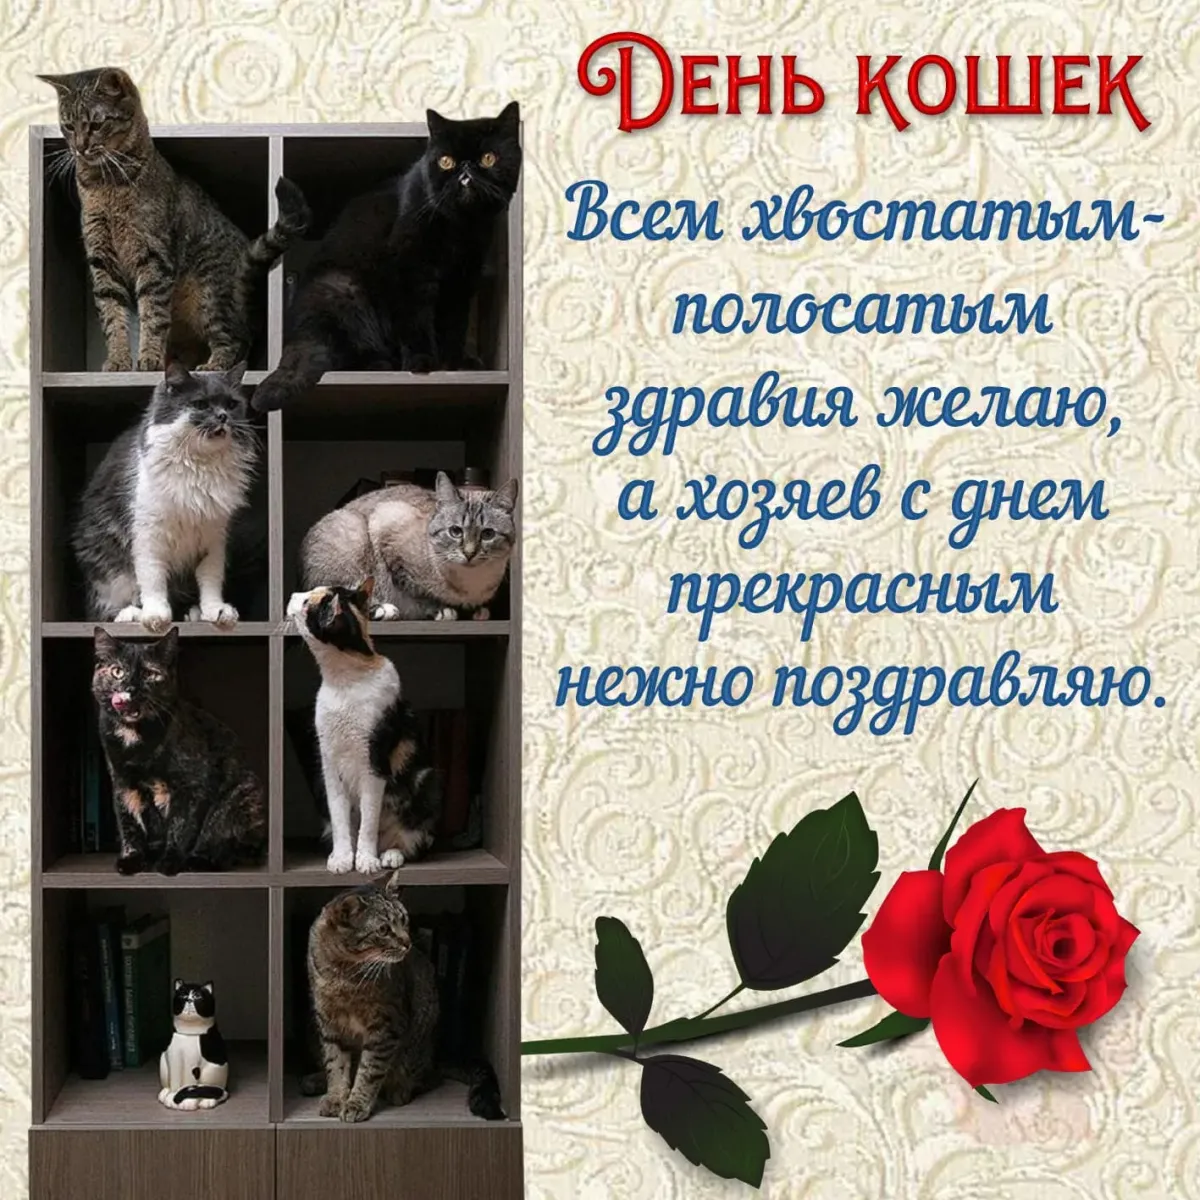 Всемирный день кошек. Поздравление с днем кошек. День кошек открытки. День кошек поздравления открытки.